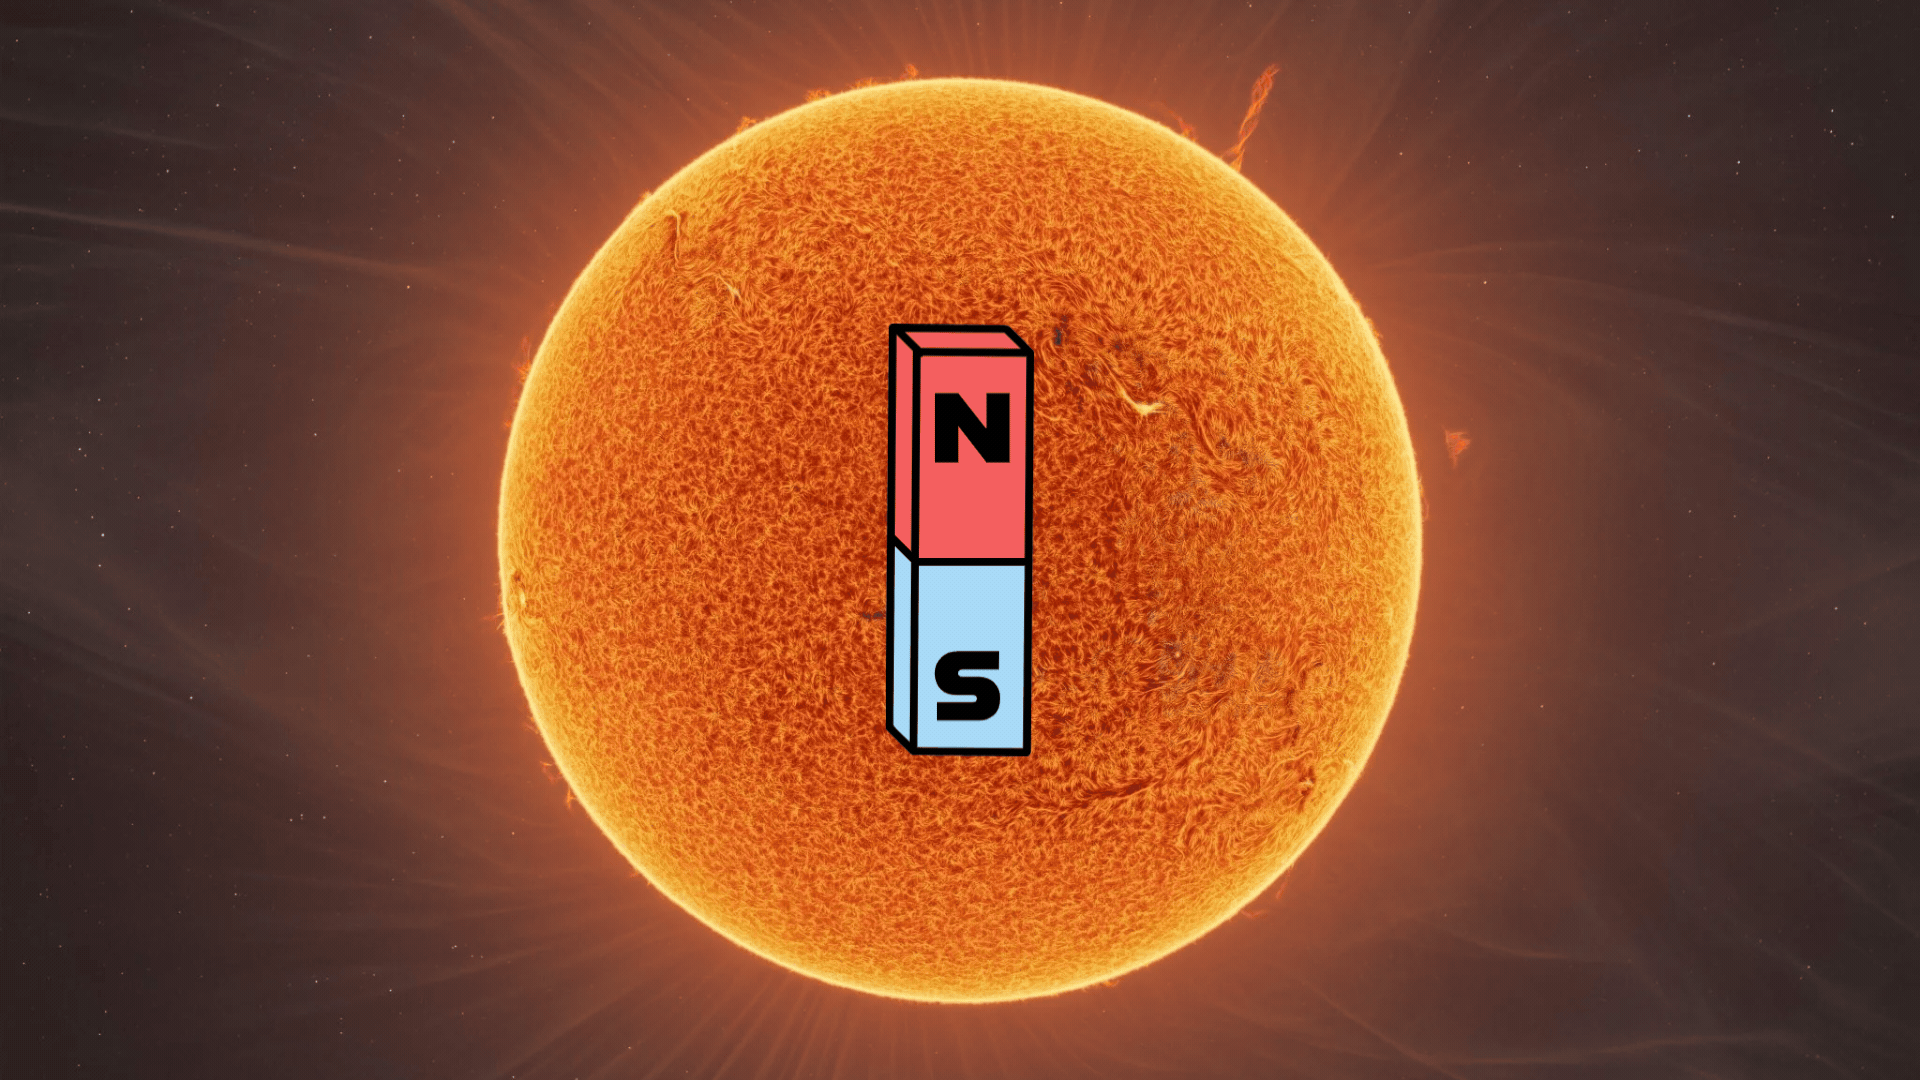 Mehr über den Artikel erfahren Das Magnetfeld der Sonne ist dabei, sich zu verändern. Hier ist, was zu erwarten ist.